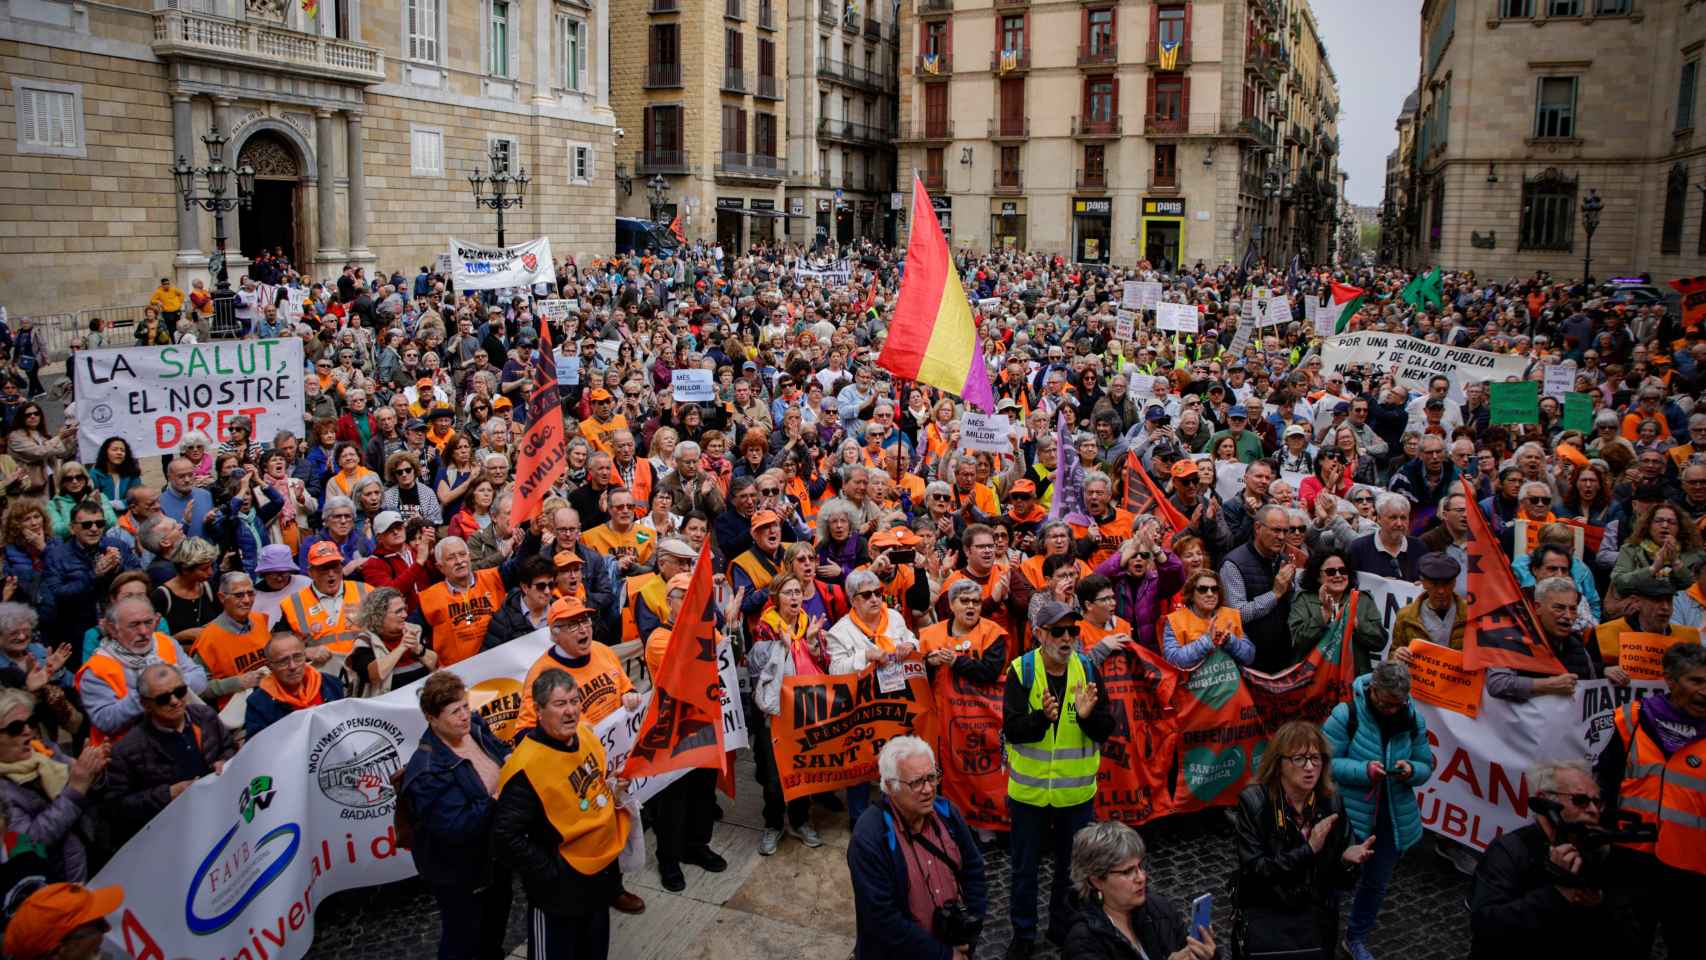 Decenas de personas llenan la plaza Sant Jaume de Barcelona durante la manifestación en defensa de la sanidad pública